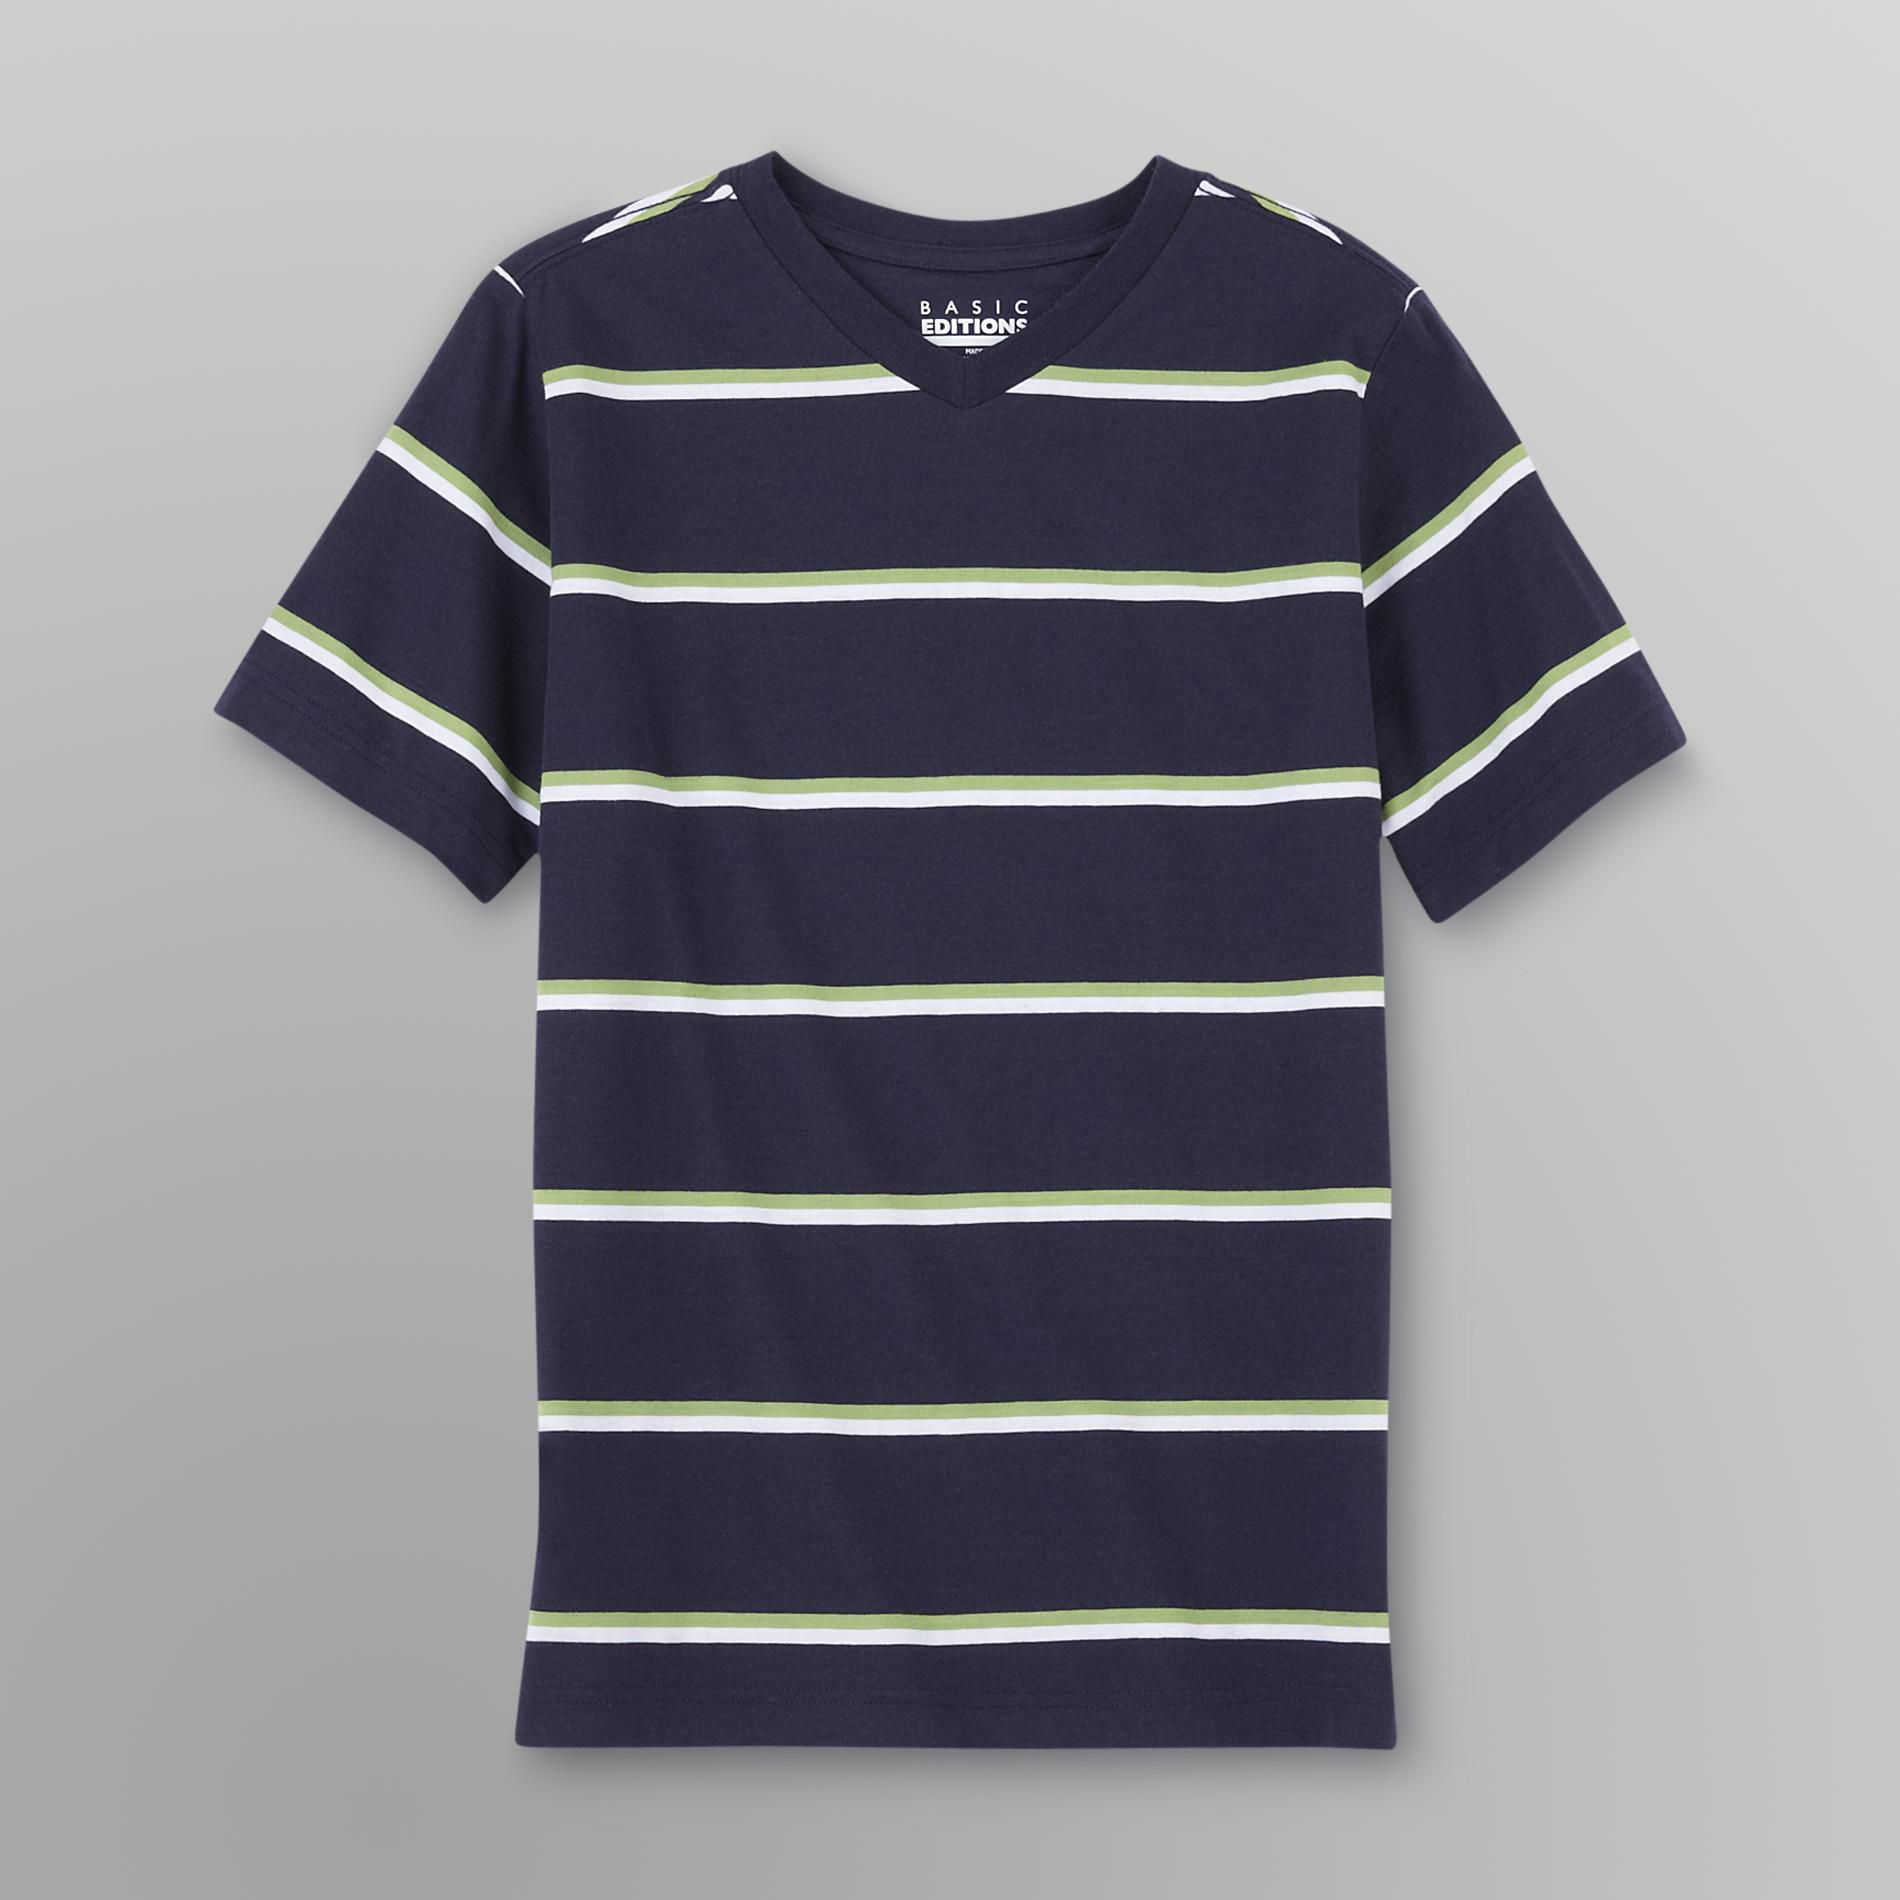 Basic Editions Boy's V-neck T-Shirt - Stripes